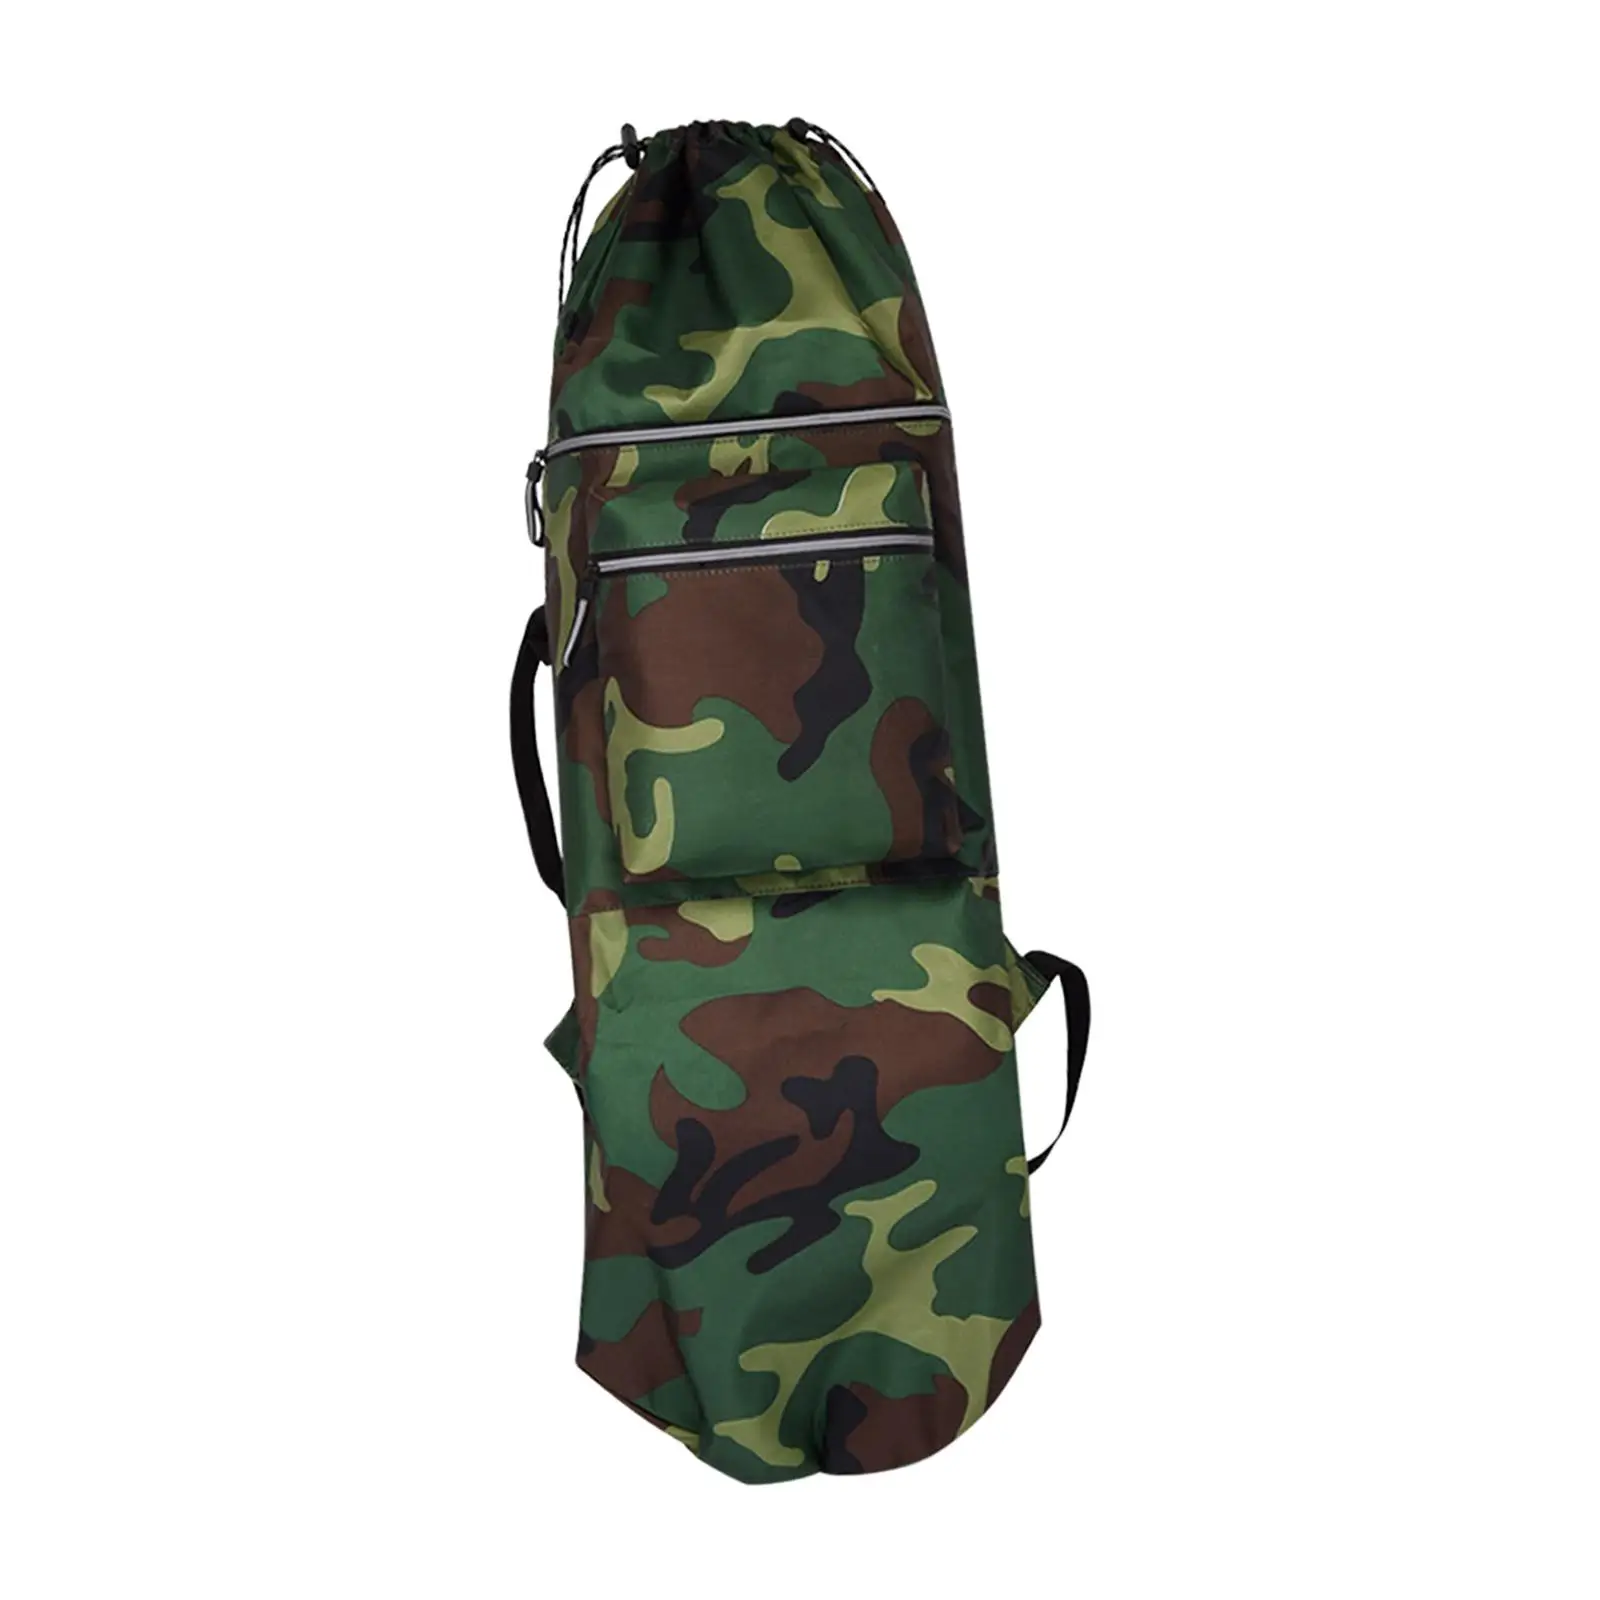 Skateboard Backpack Bag Travel Accessories Shoulder Bag Longboard Carry Case